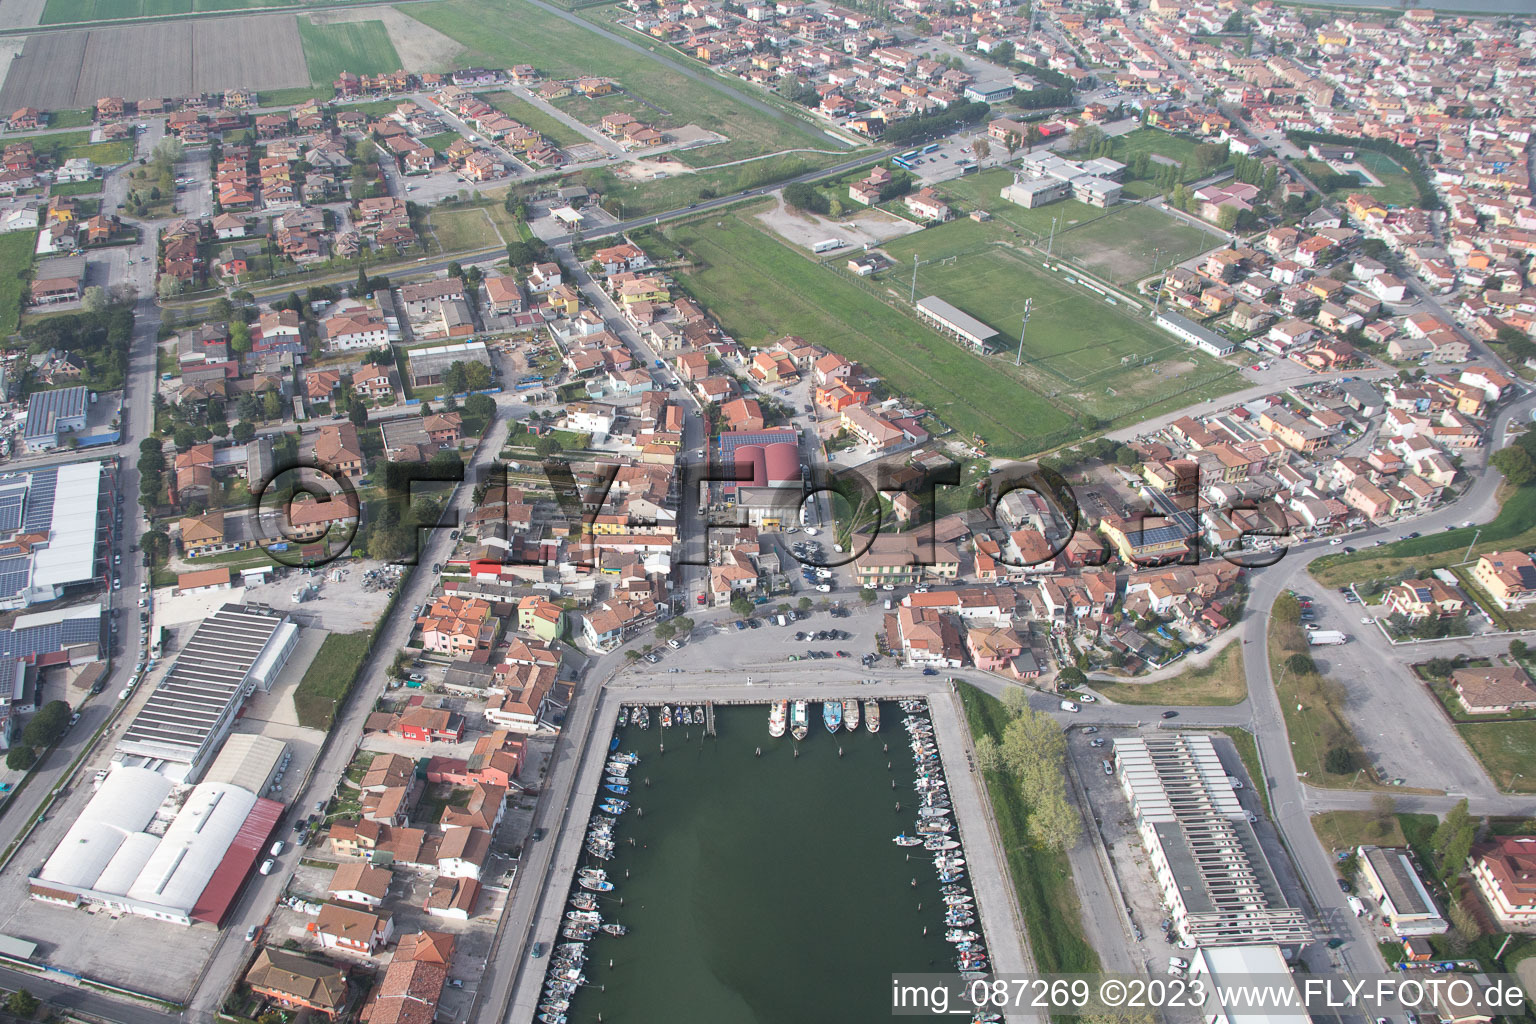 Yachthafen mit Sportboot- Anlegestellen und Bootsliegeplätzen am Uferbereich der Adria in Goro in Emilia-Romagna, Italien von oben gesehen